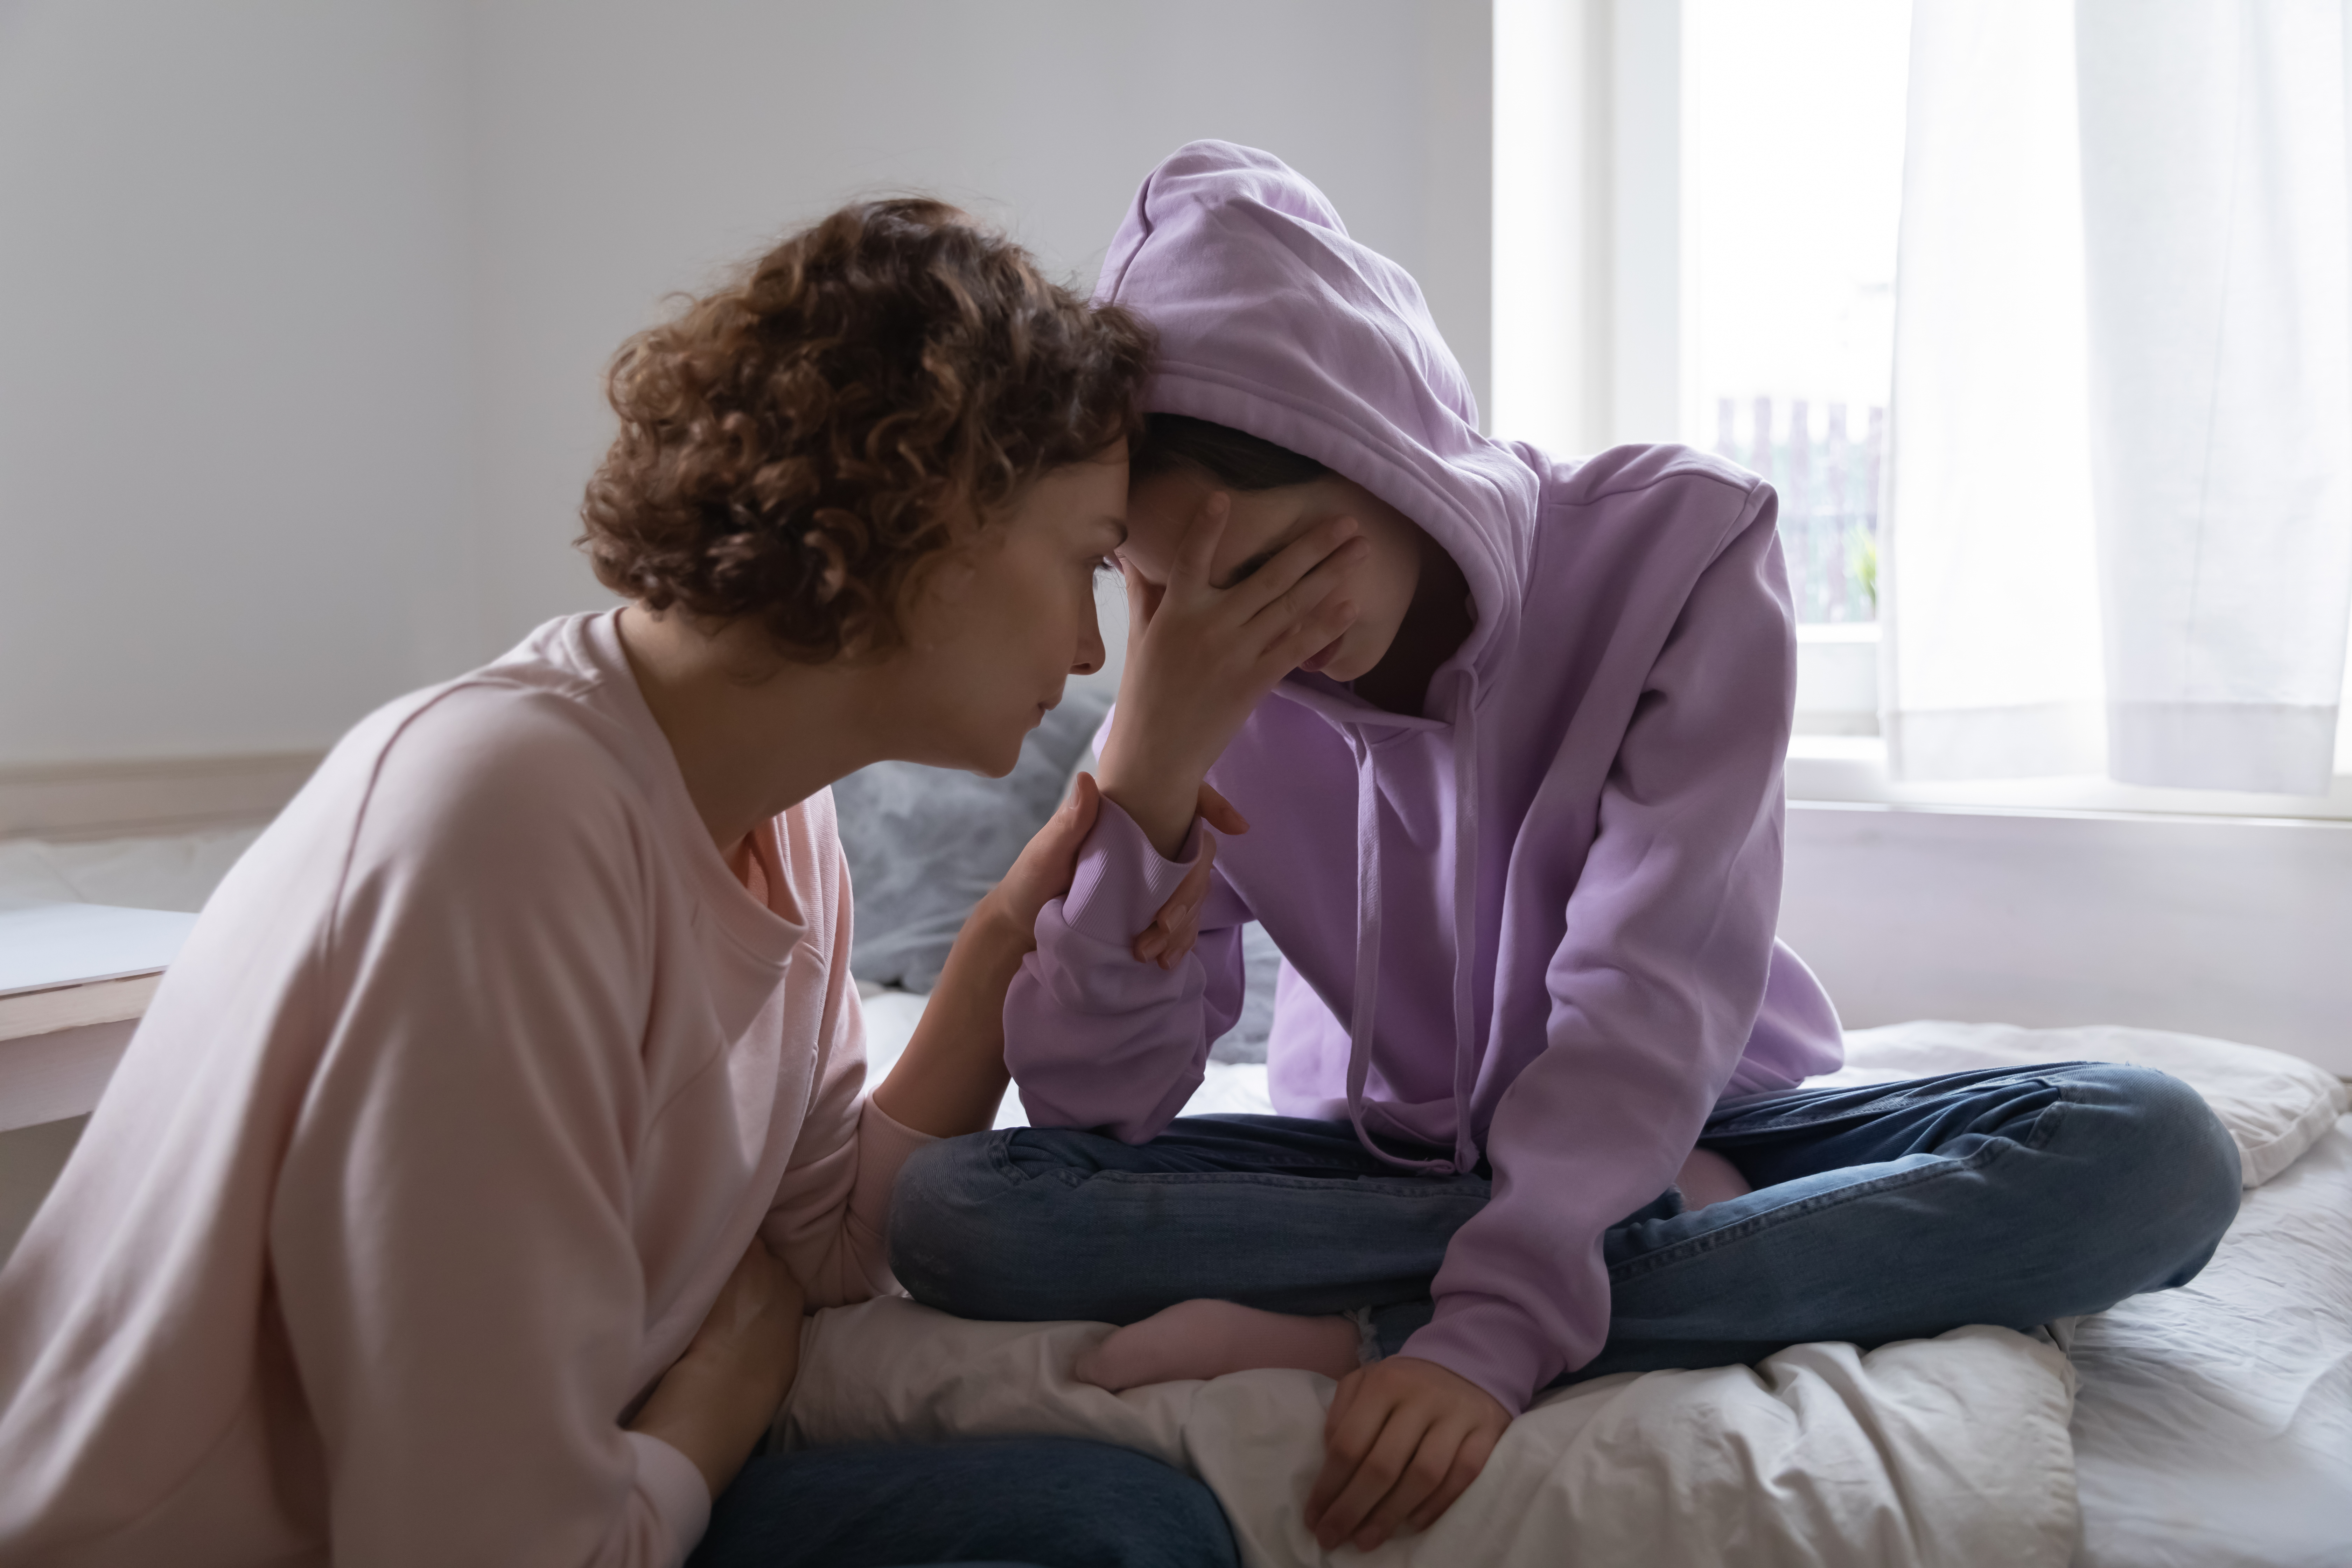 Une mère inquiète réconforte sa fille adolescente déprimée | Source : Shutterstock